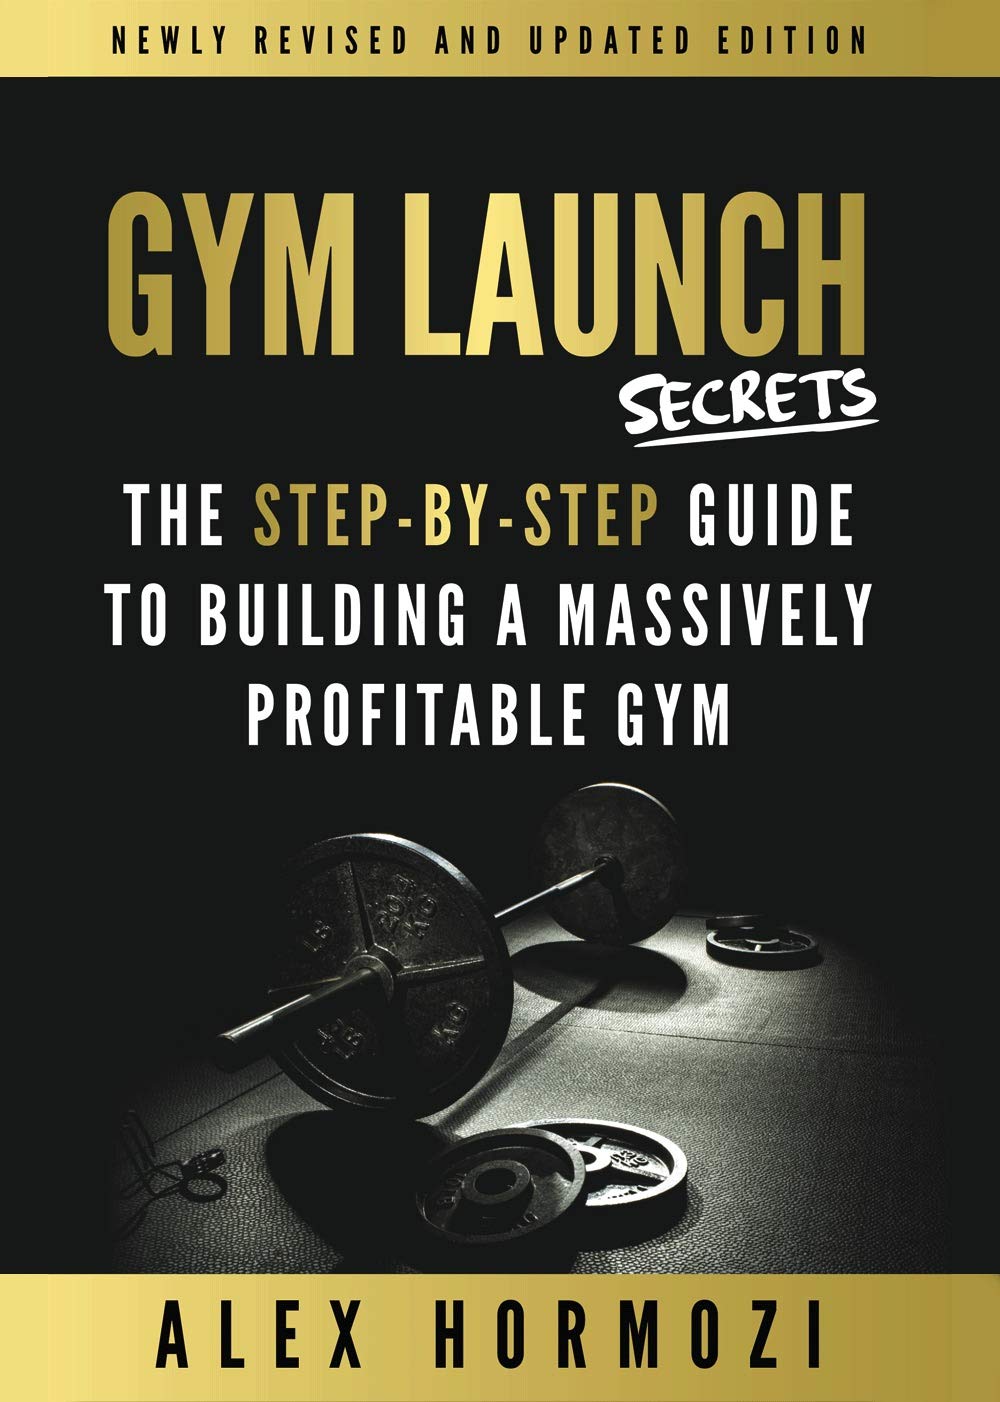 Gym Launch Secrets